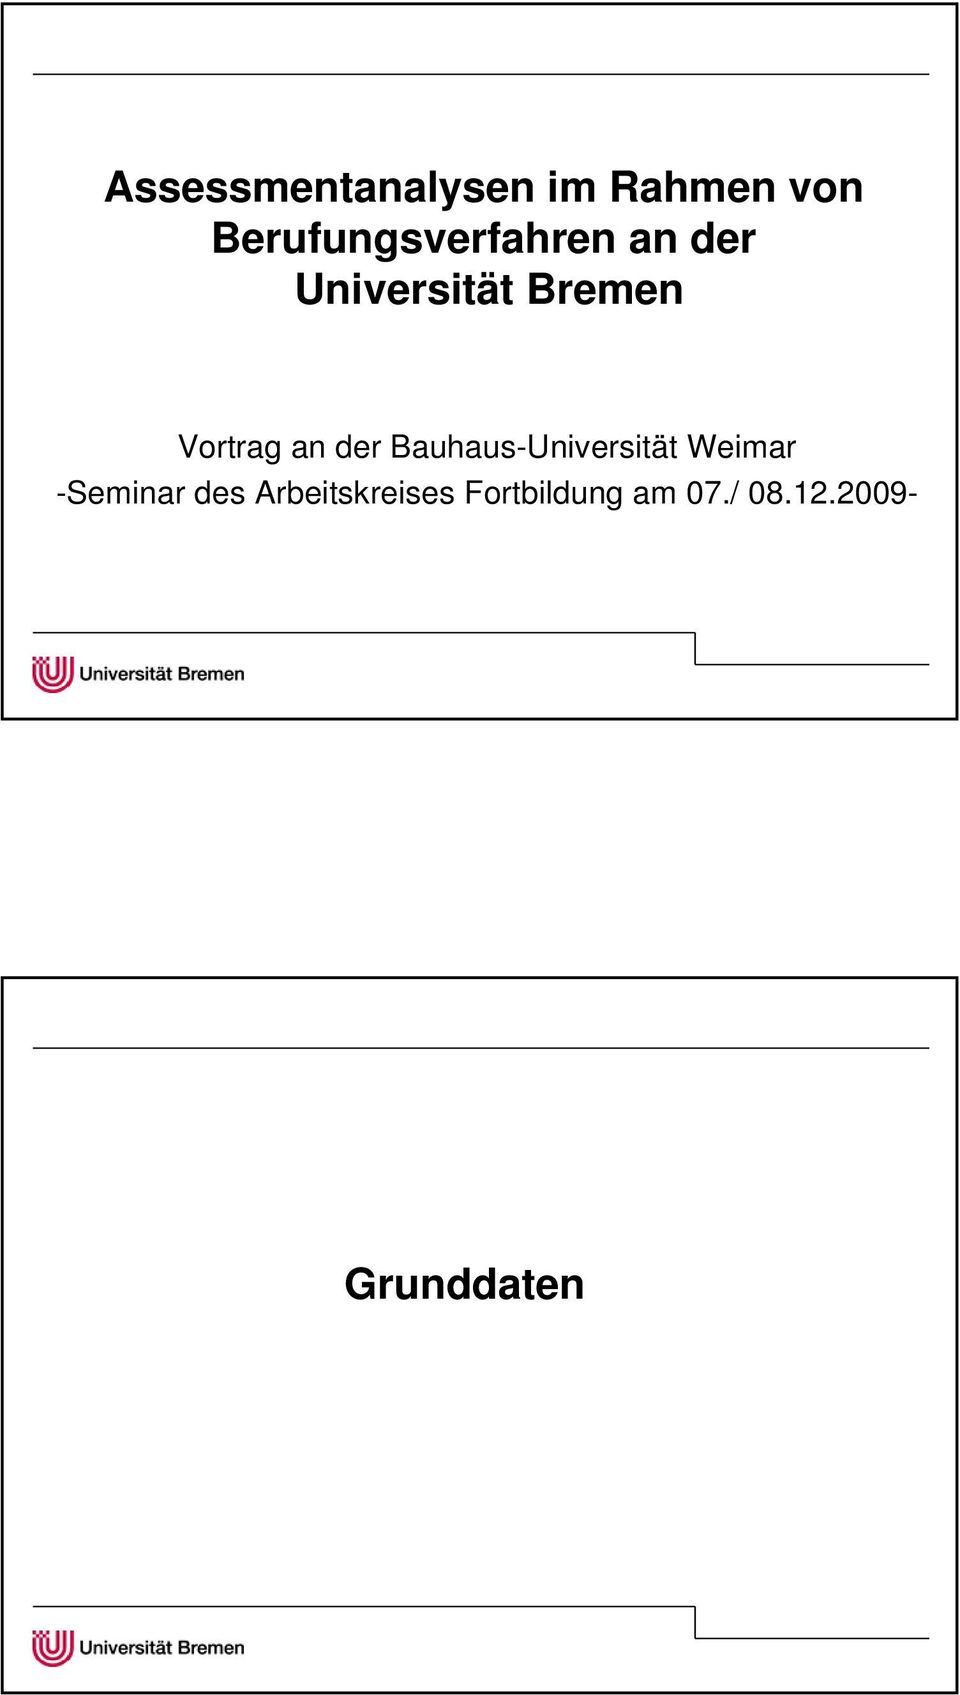 Vortrag an der Bauhaus-Universität Weimar